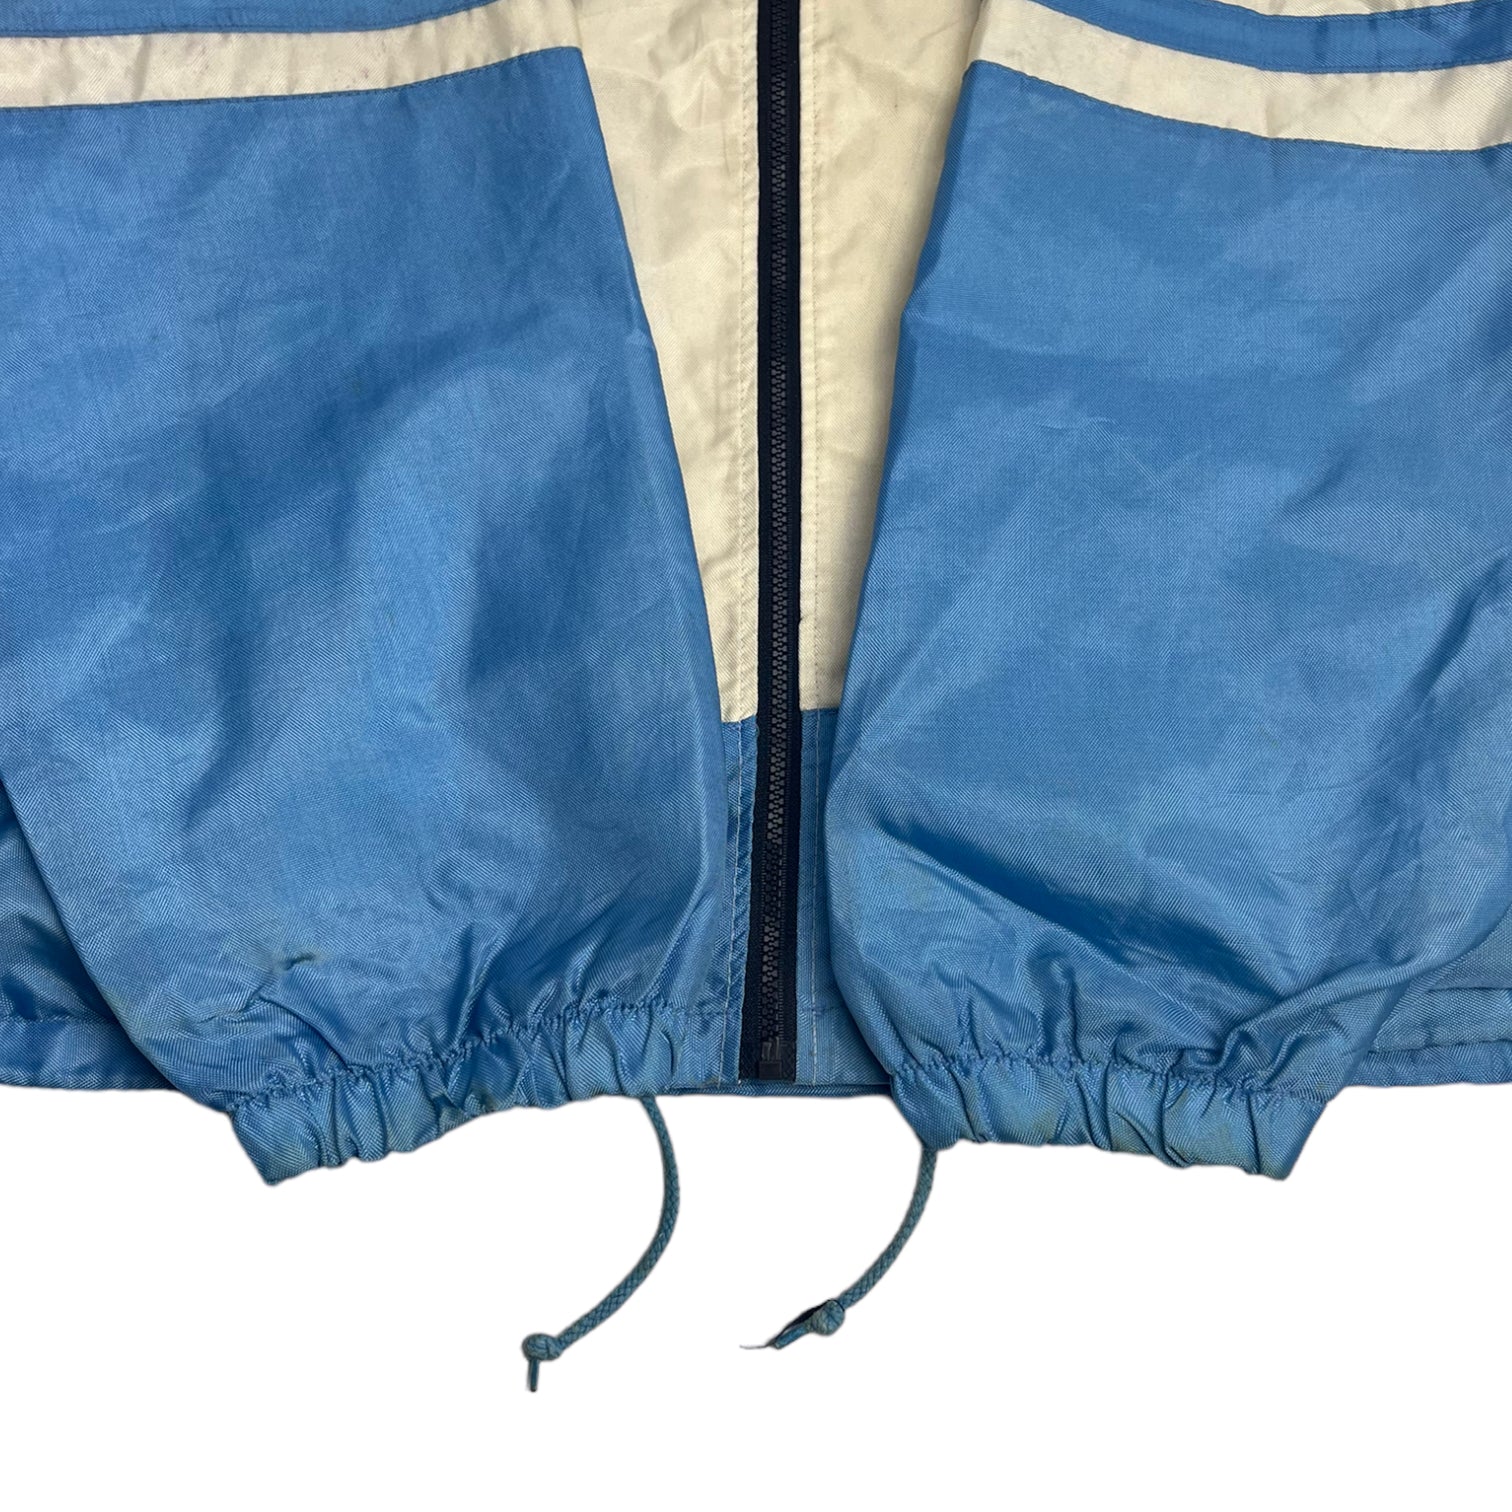 Vintage UNC Tar Heels Jacket